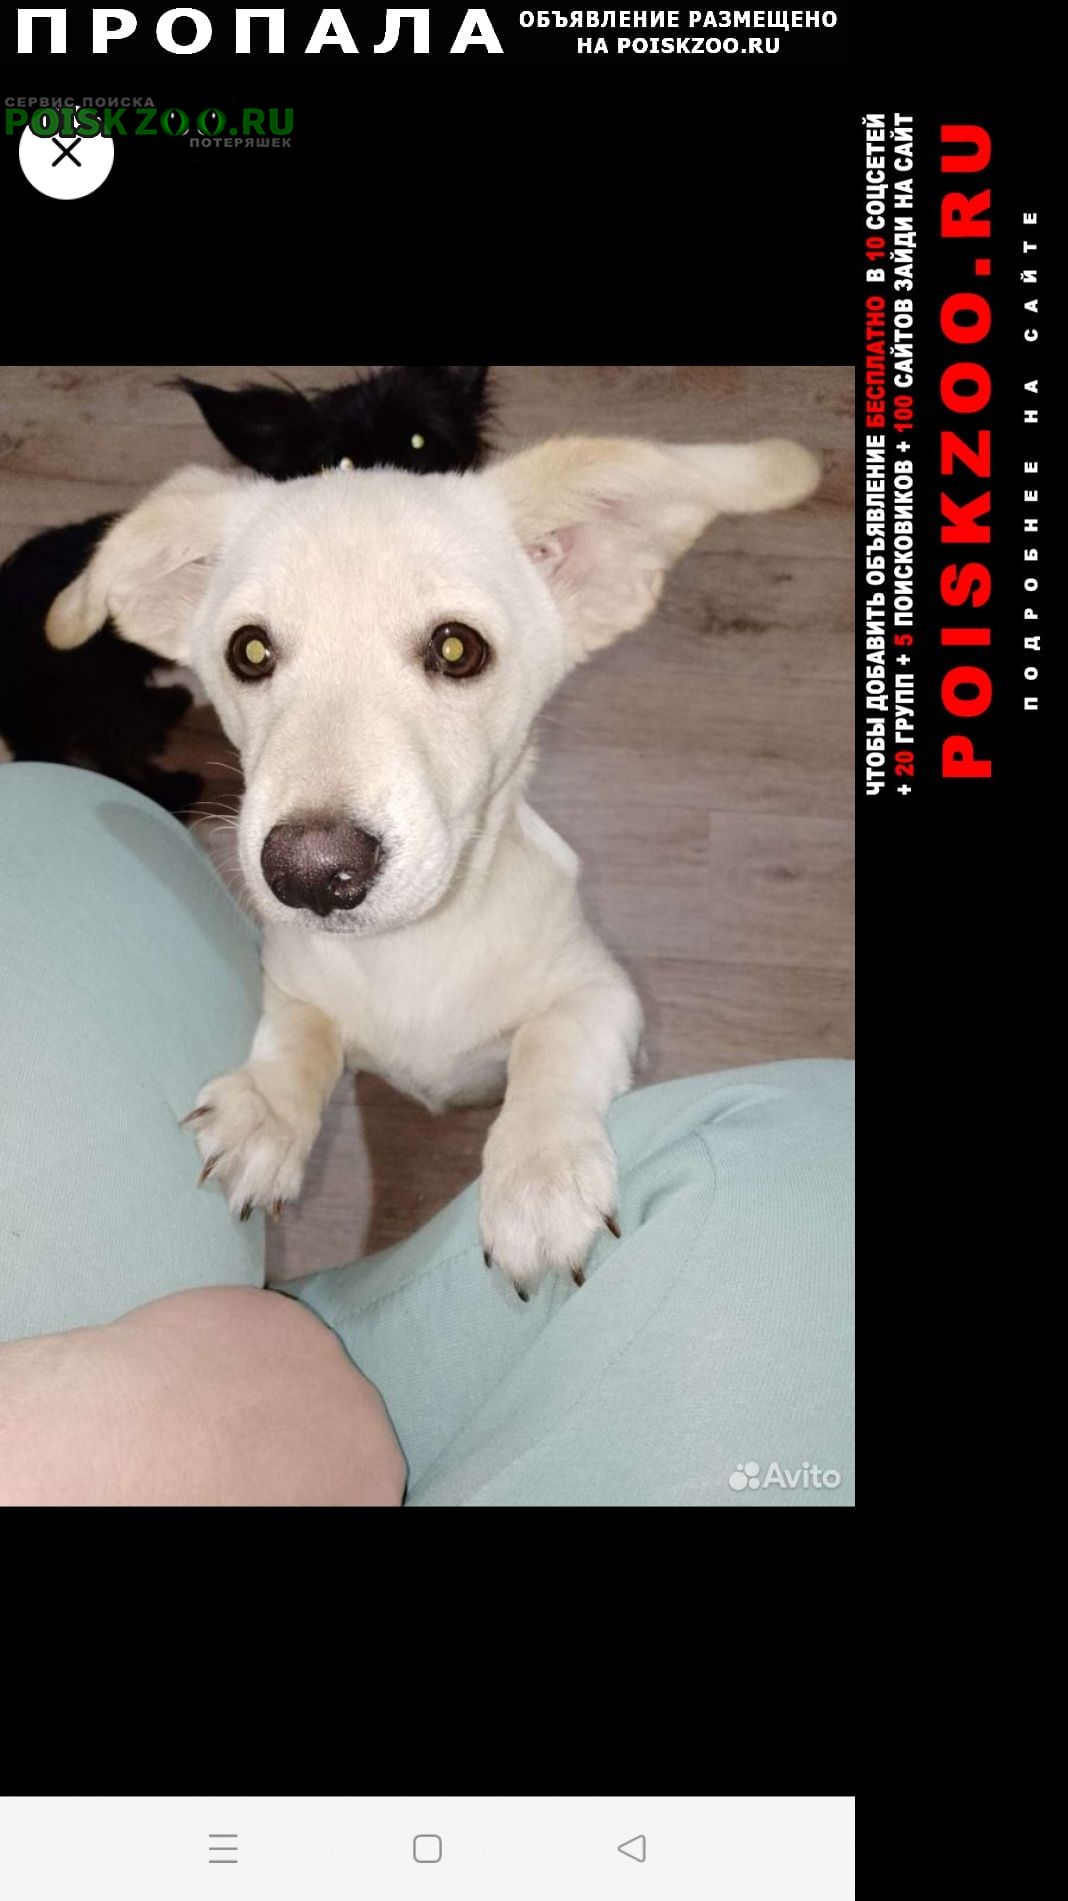 Пермь Пропала собака кобель помогите найти ребенка